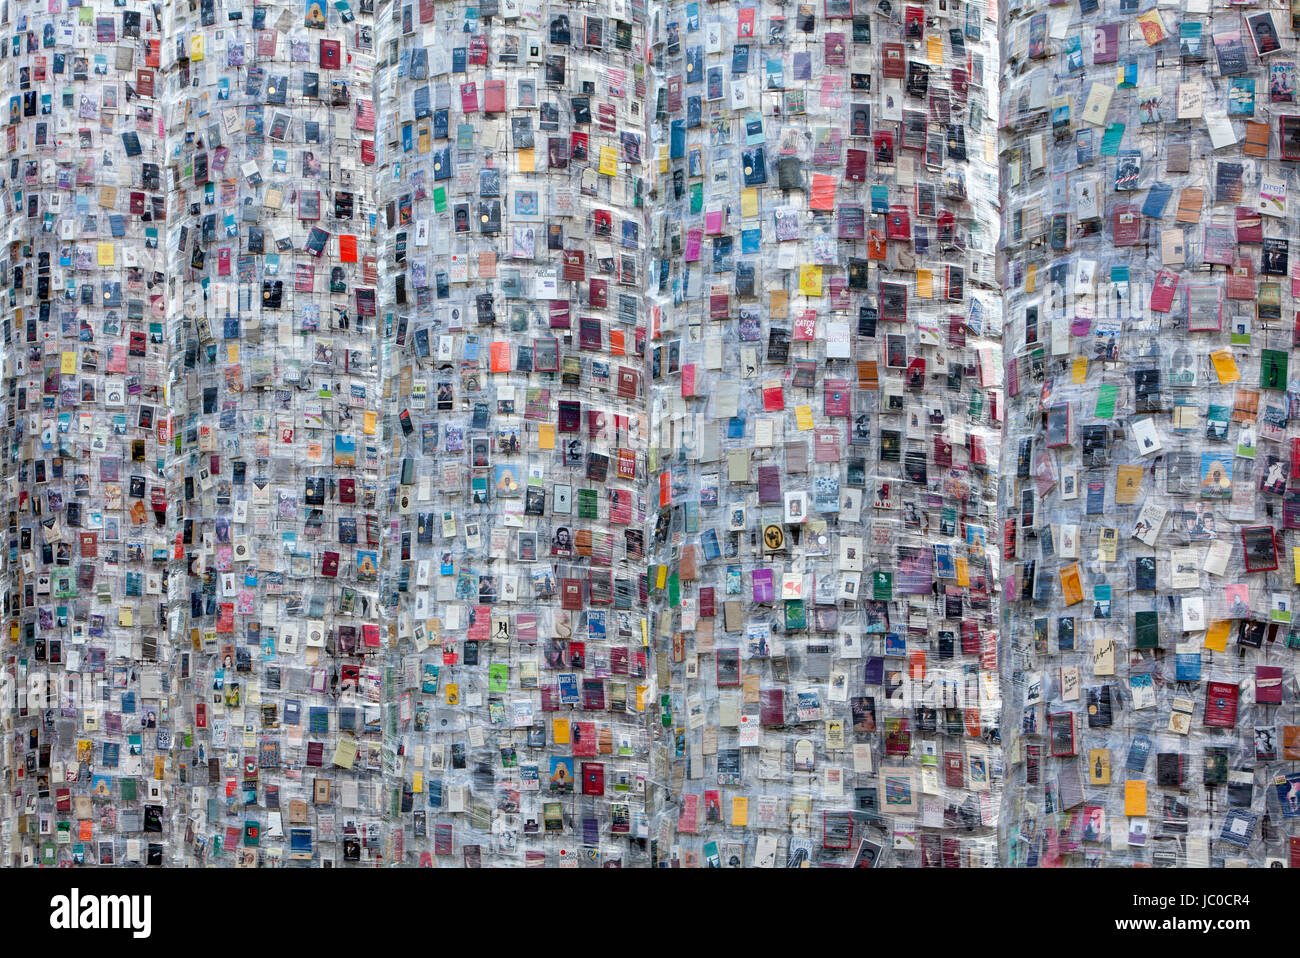 'Il Partenone di libri' dell'Argentino artista concettuale Marta Minujin, documenta 14 mostra, 2017, Kassel, Germania, Europa Foto Stock